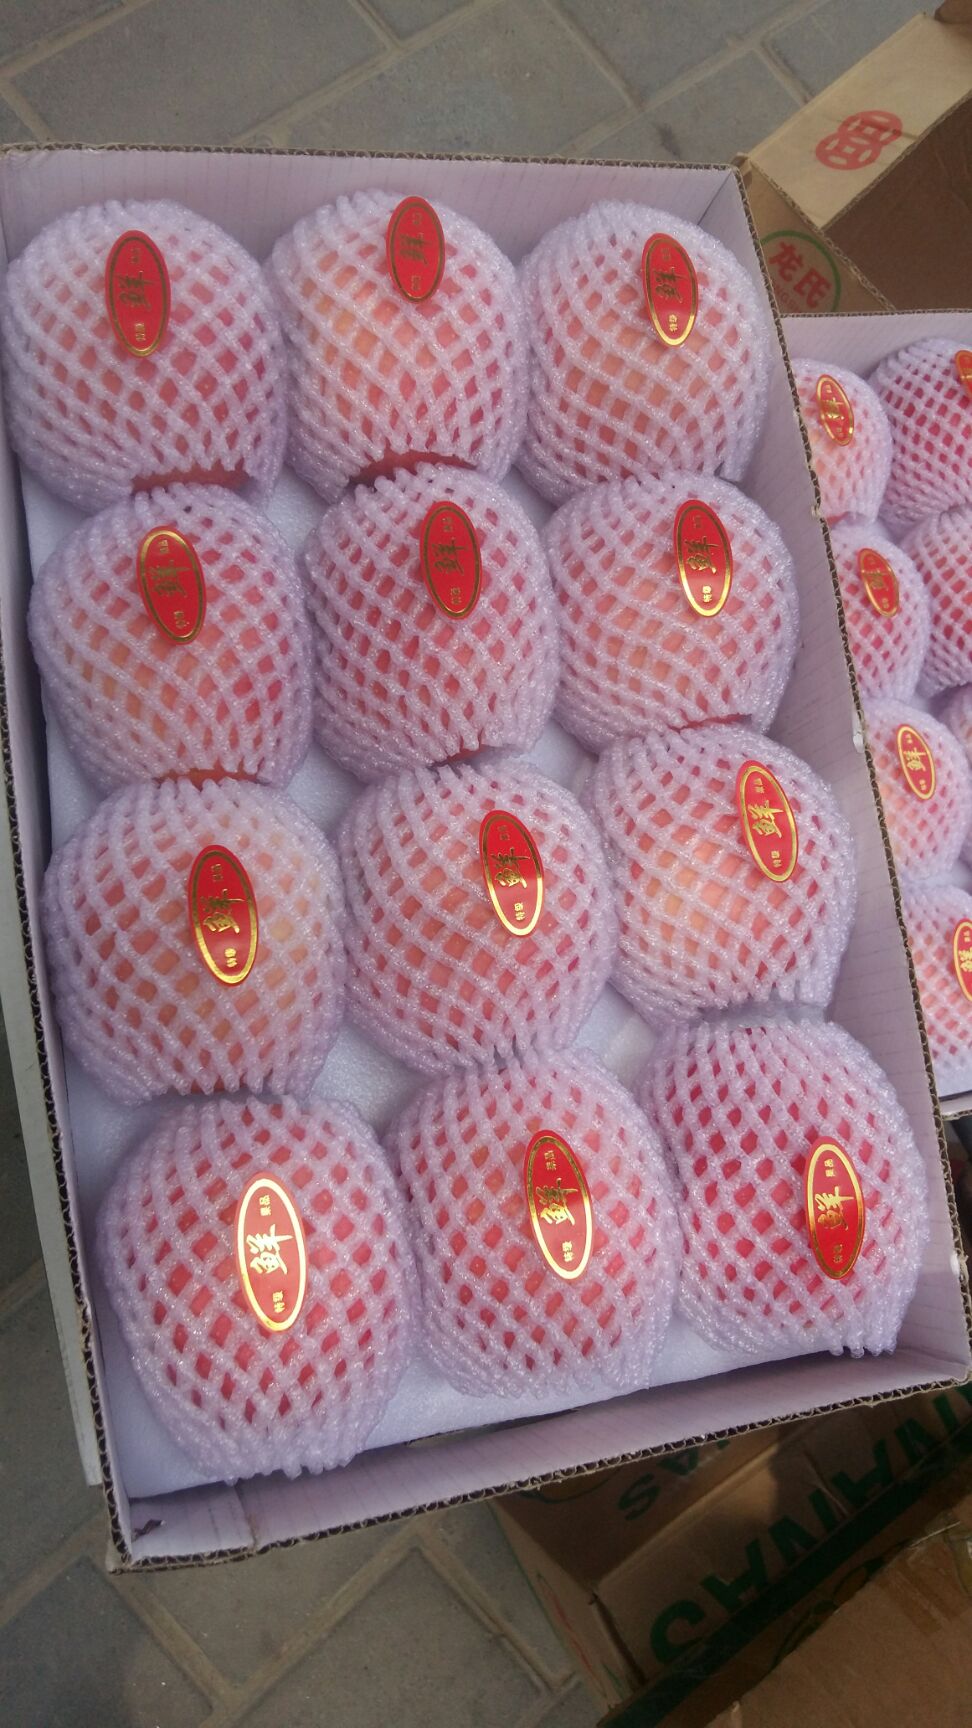 商品详情 陕西洛川红富士苹果,个大,色好,味甜,送朋友,亲戚,各种包装